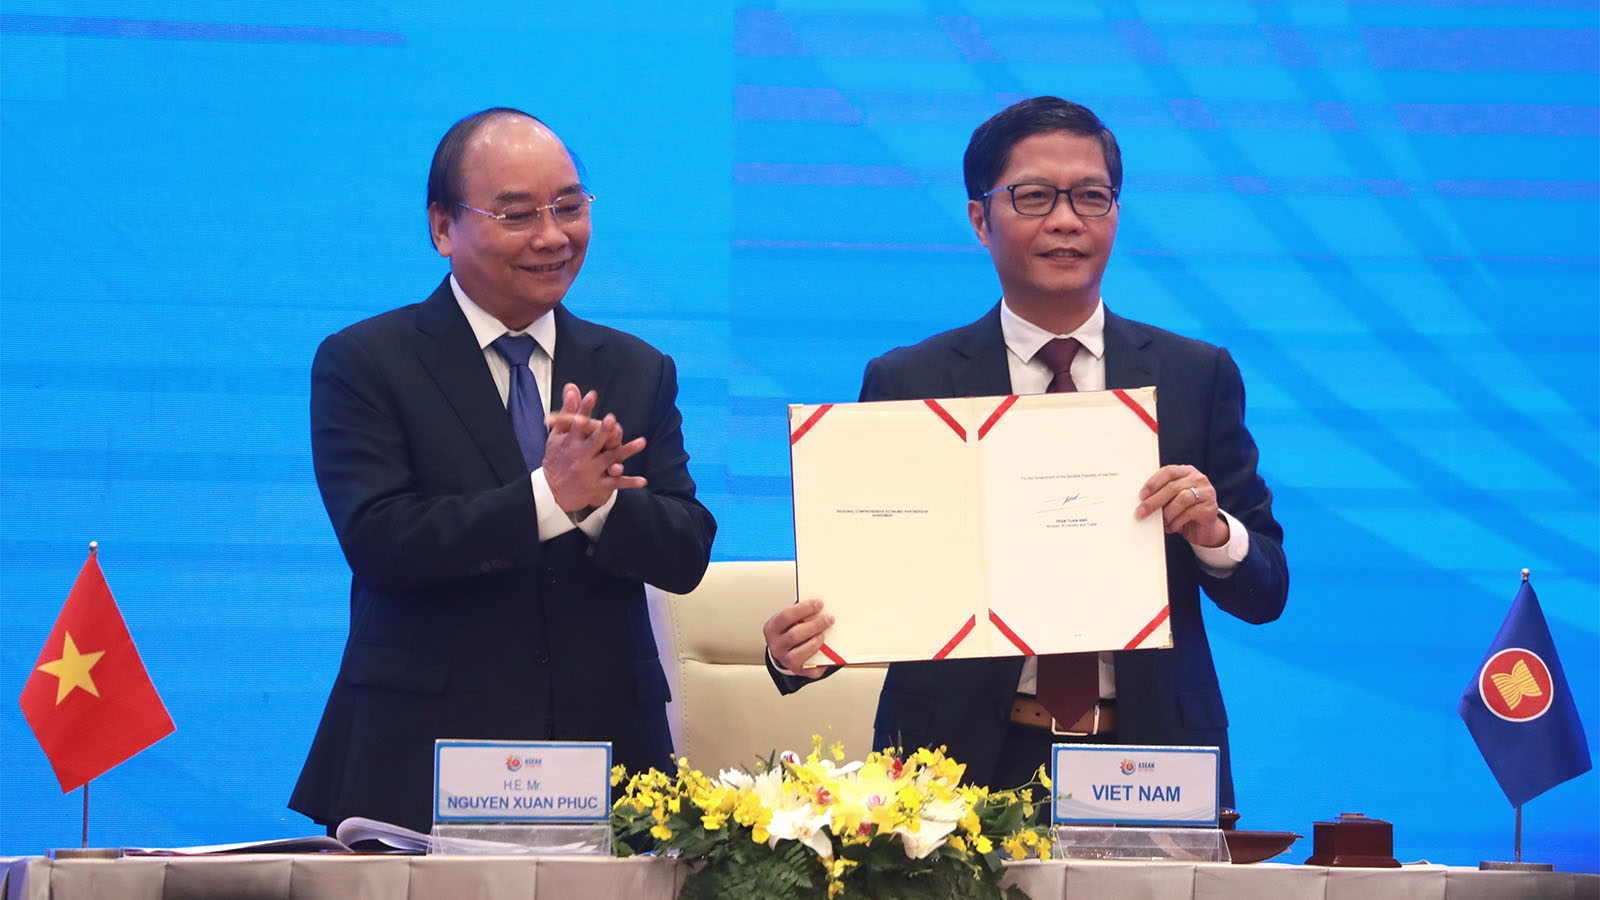 מעמד חתימת הסכם הסחר החופשי במזרח אסיה (צילום: AP Photo/Hau Dinh)